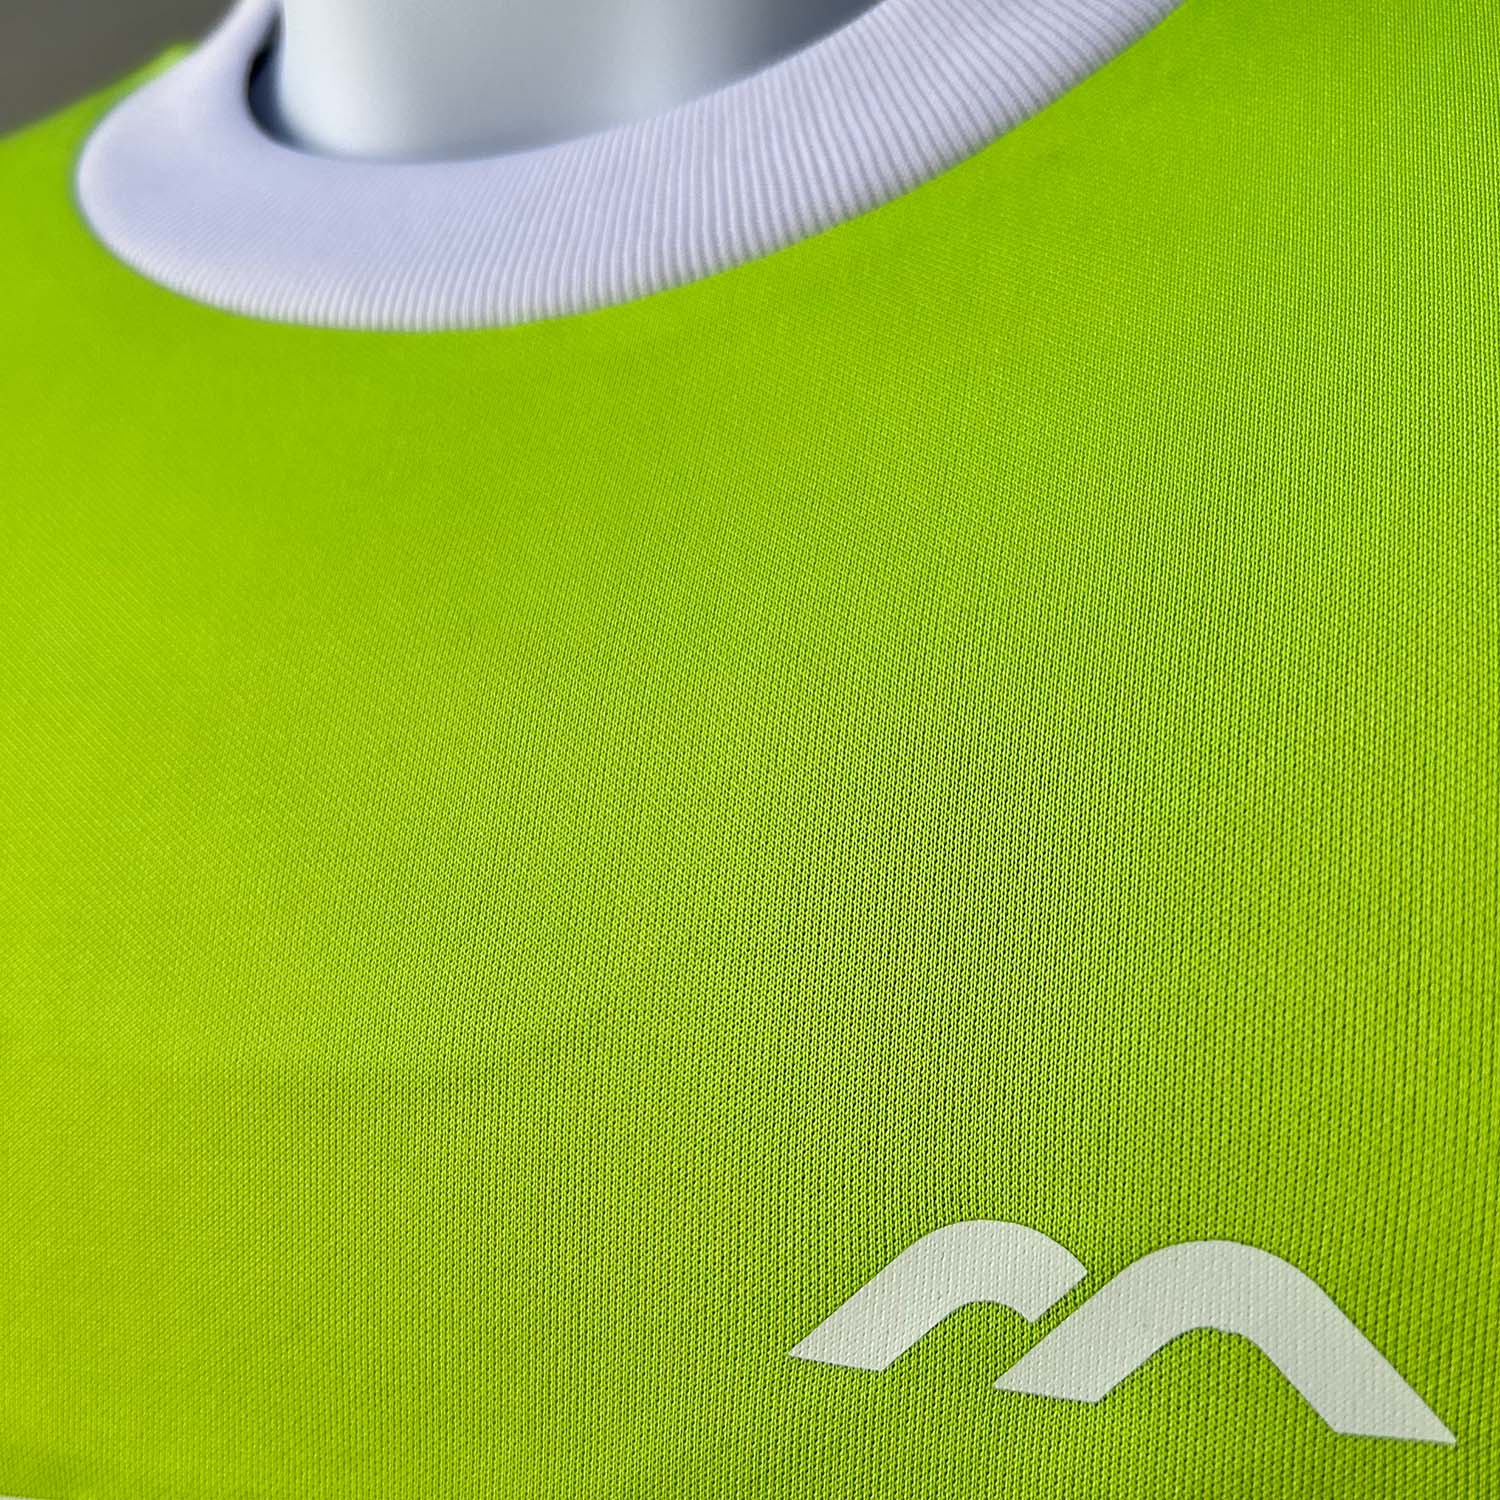 Mercian Pro Goalkeeper Jersey Short Sleeve Green Details